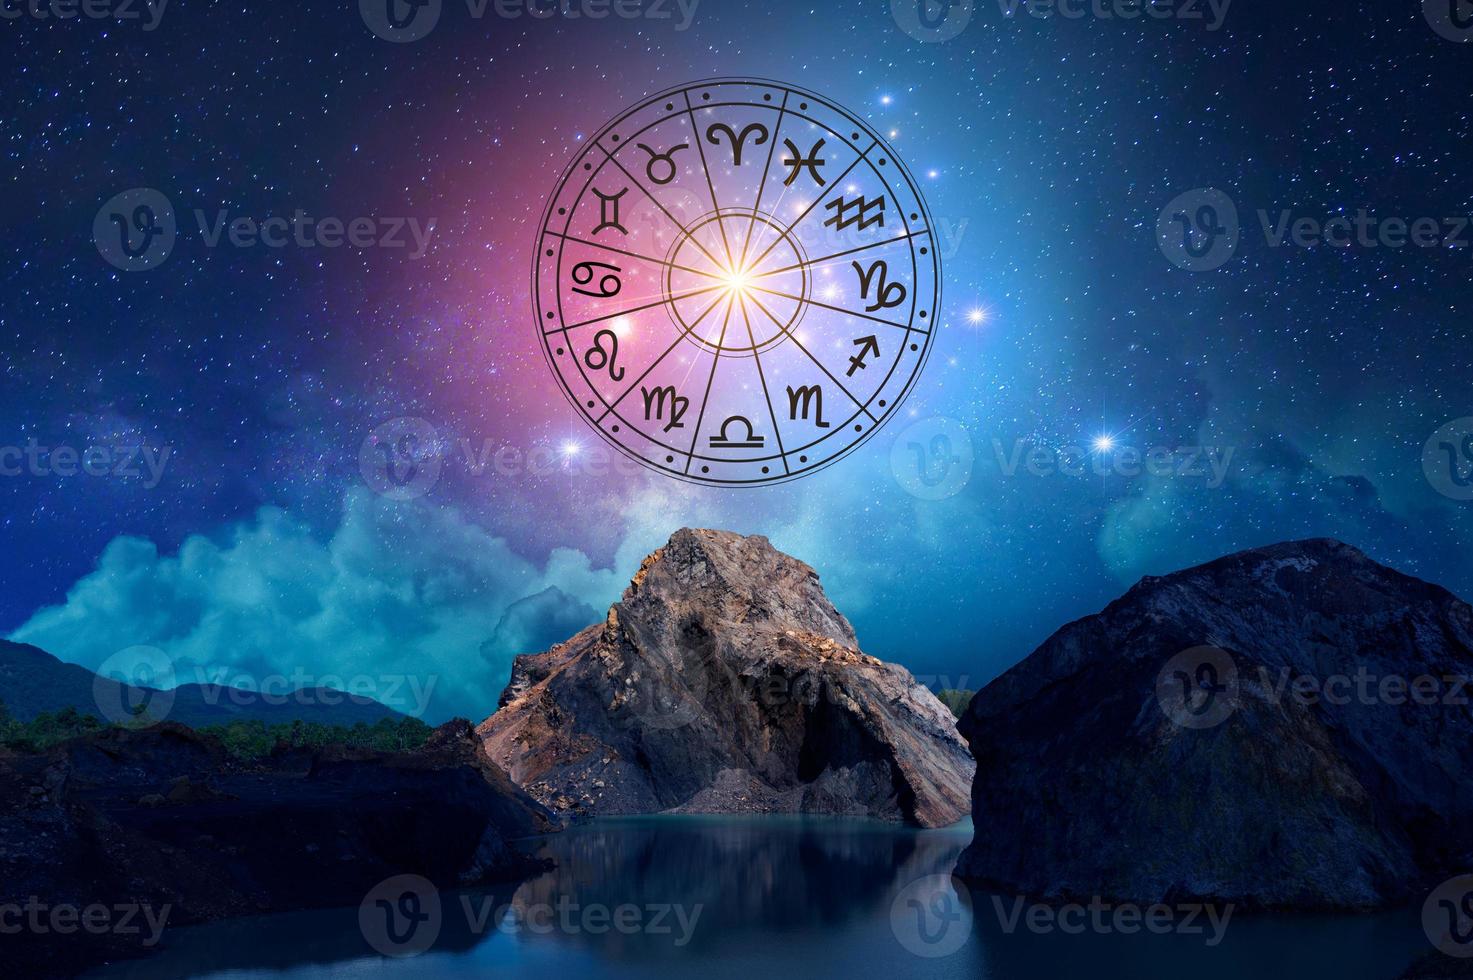 signos do zodíaco dentro do círculo do horóscopo. astrologia no céu com muitas estrelas e luas astrologia e horóscopos conceito foto